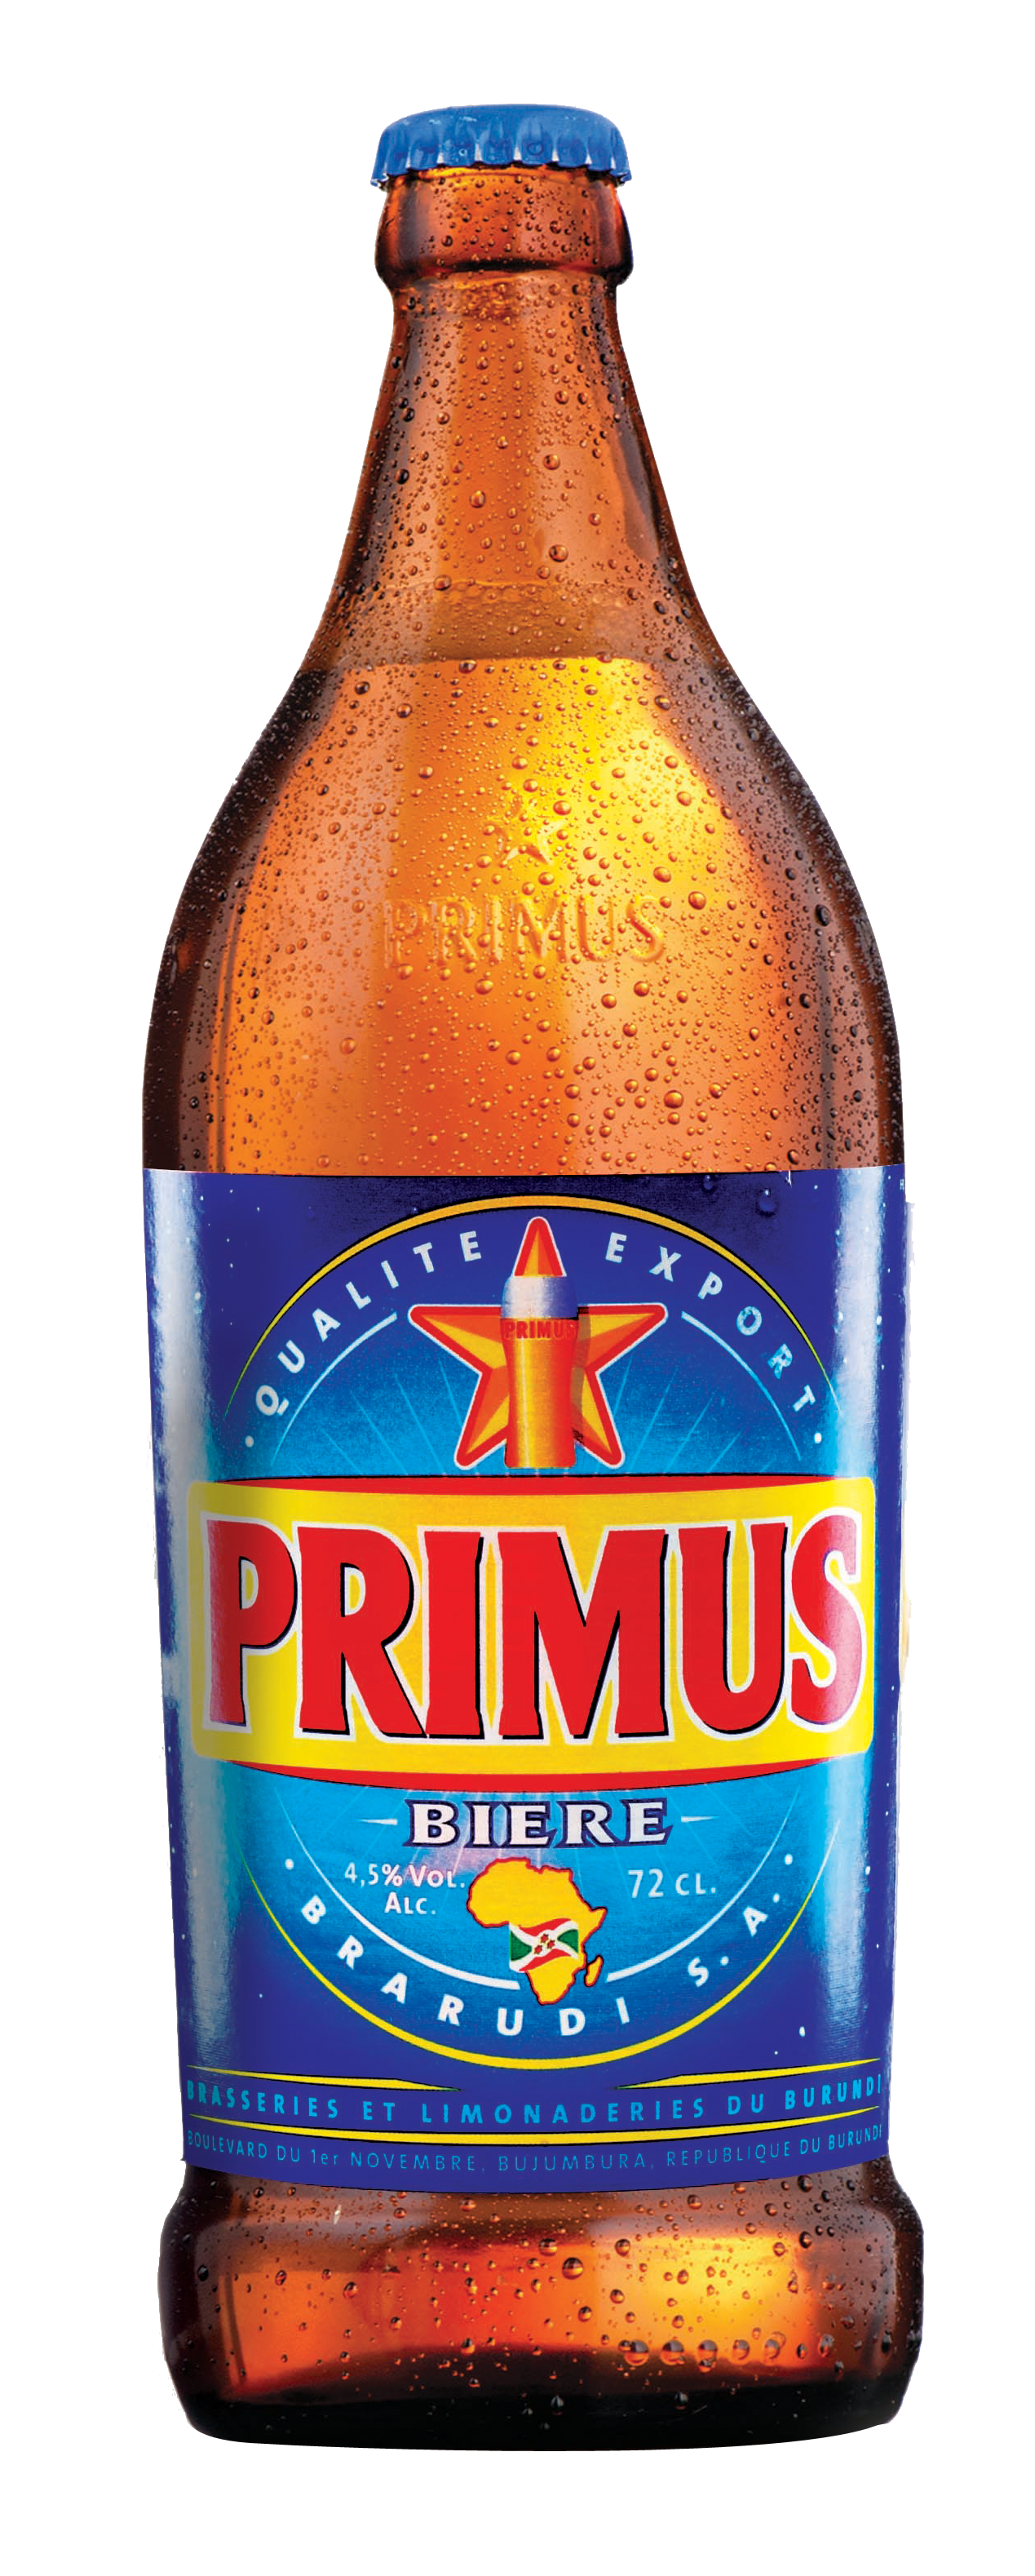 Primus 2011